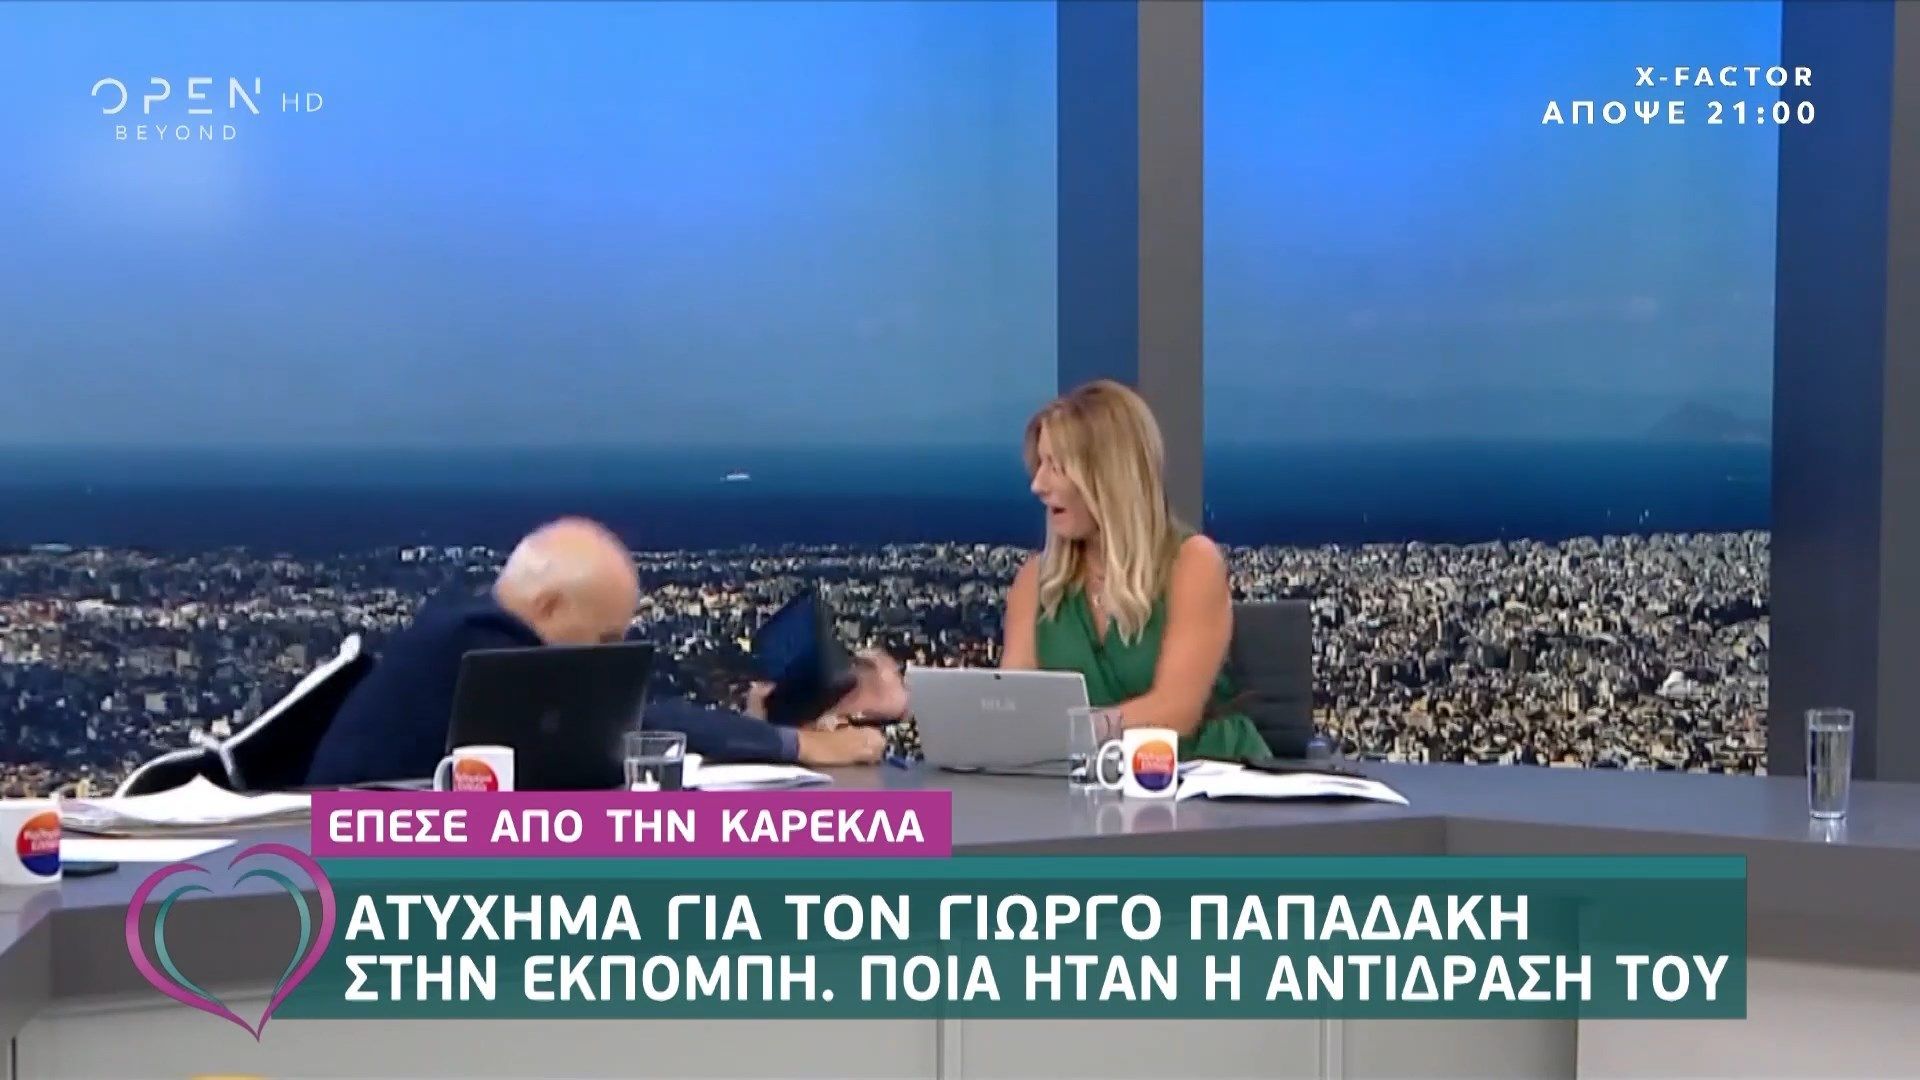 Γιώργος Παπαδάκης: Έπεσε από την καρέκλα του ενώ ήταν ζωντανά “στον αέρα” (βίντεο)